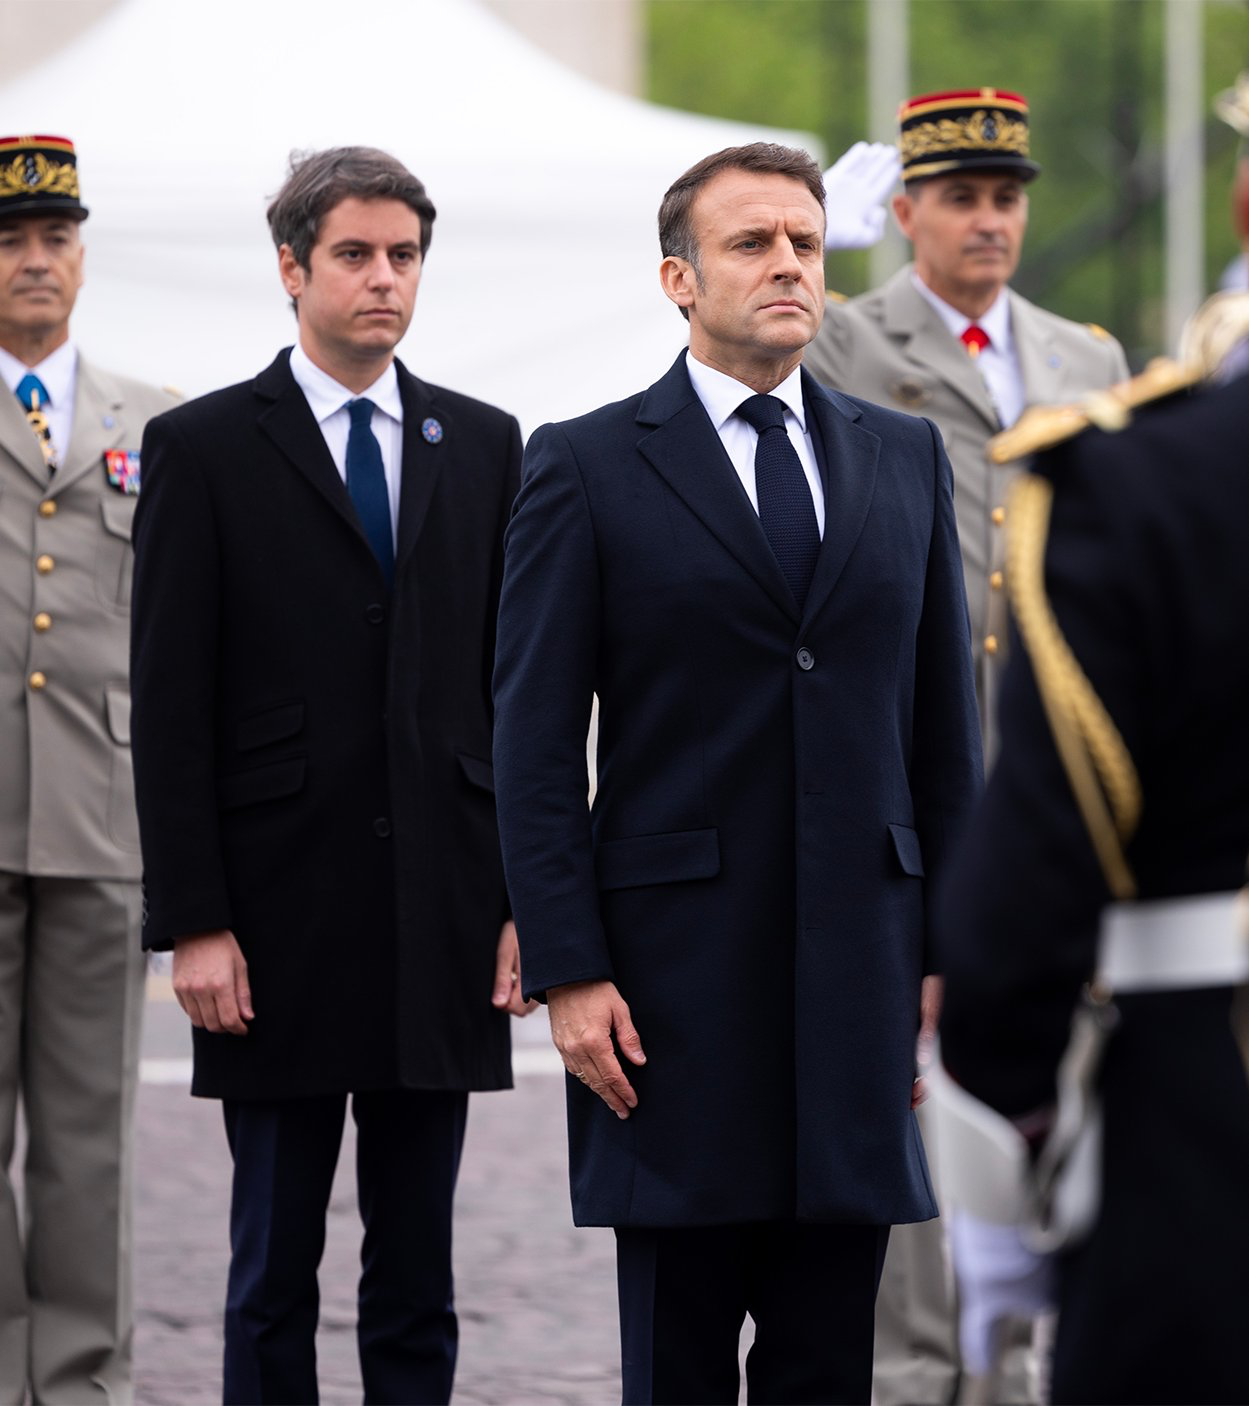 الرئيس الفرنسي ورئيس الوزراء في احتفالية الذكرى الـ 79 لانتصار الحلفاء في الحرب العالمية الثانية